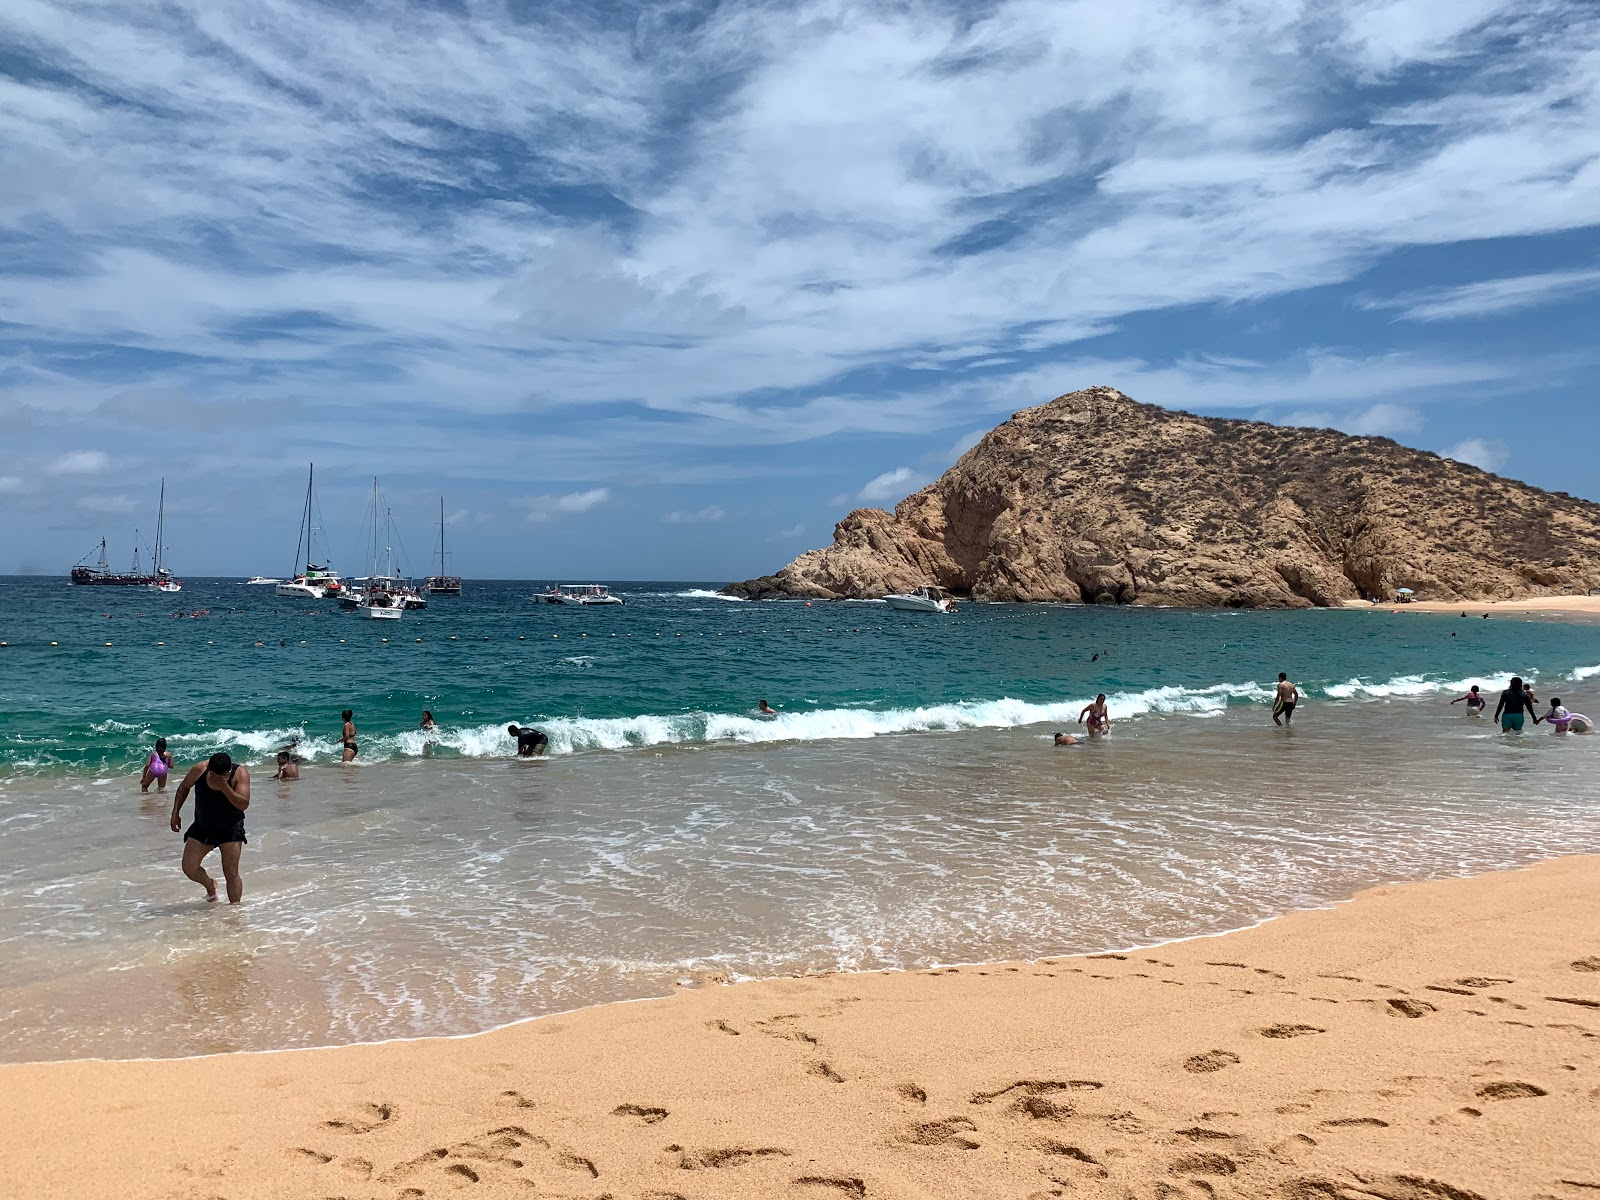 Fotografie cu Playa Santa Maria - locul popular printre cunoscătorii de relaxare